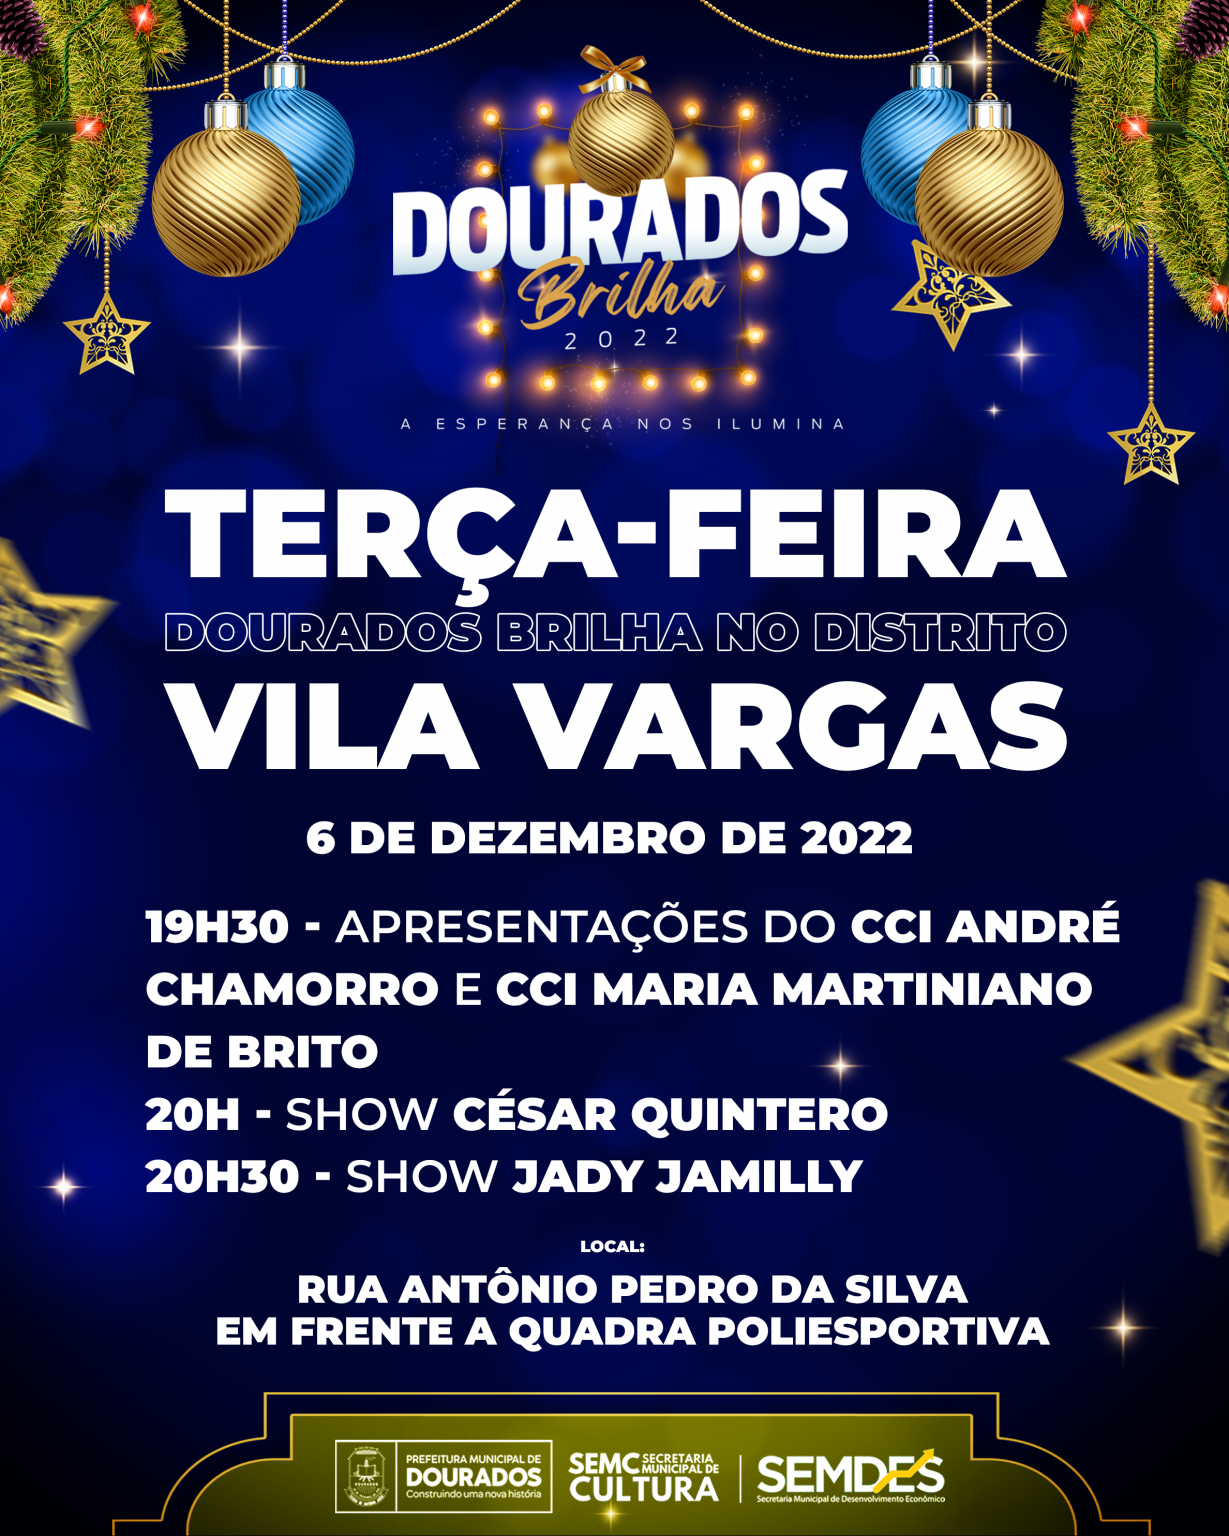 Vila Vargas recebe “Dourados Brilha” nesta terça-feira